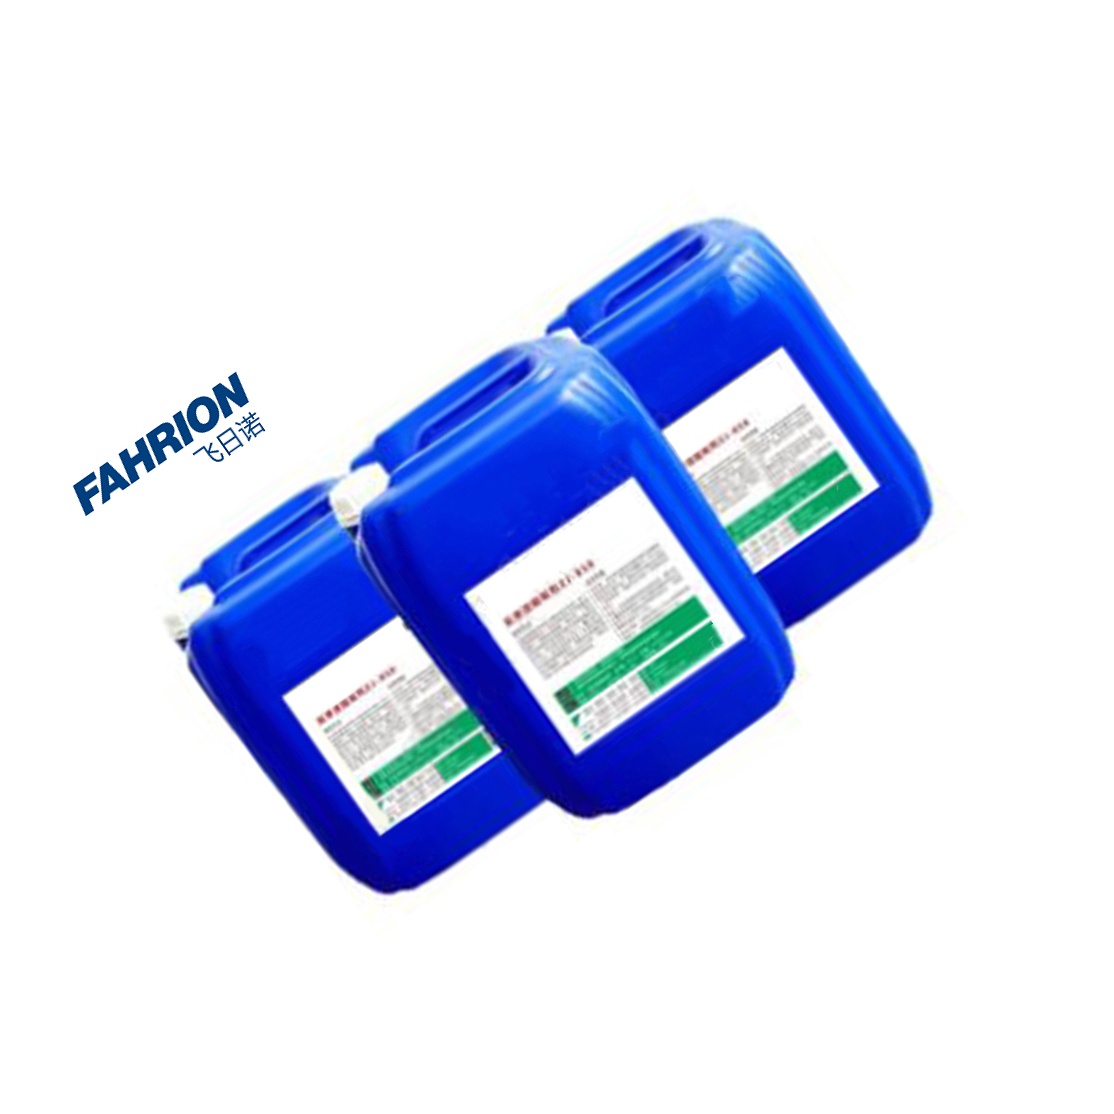 FAHRION 多用酸洗缓蚀剂 GD99-900-3603